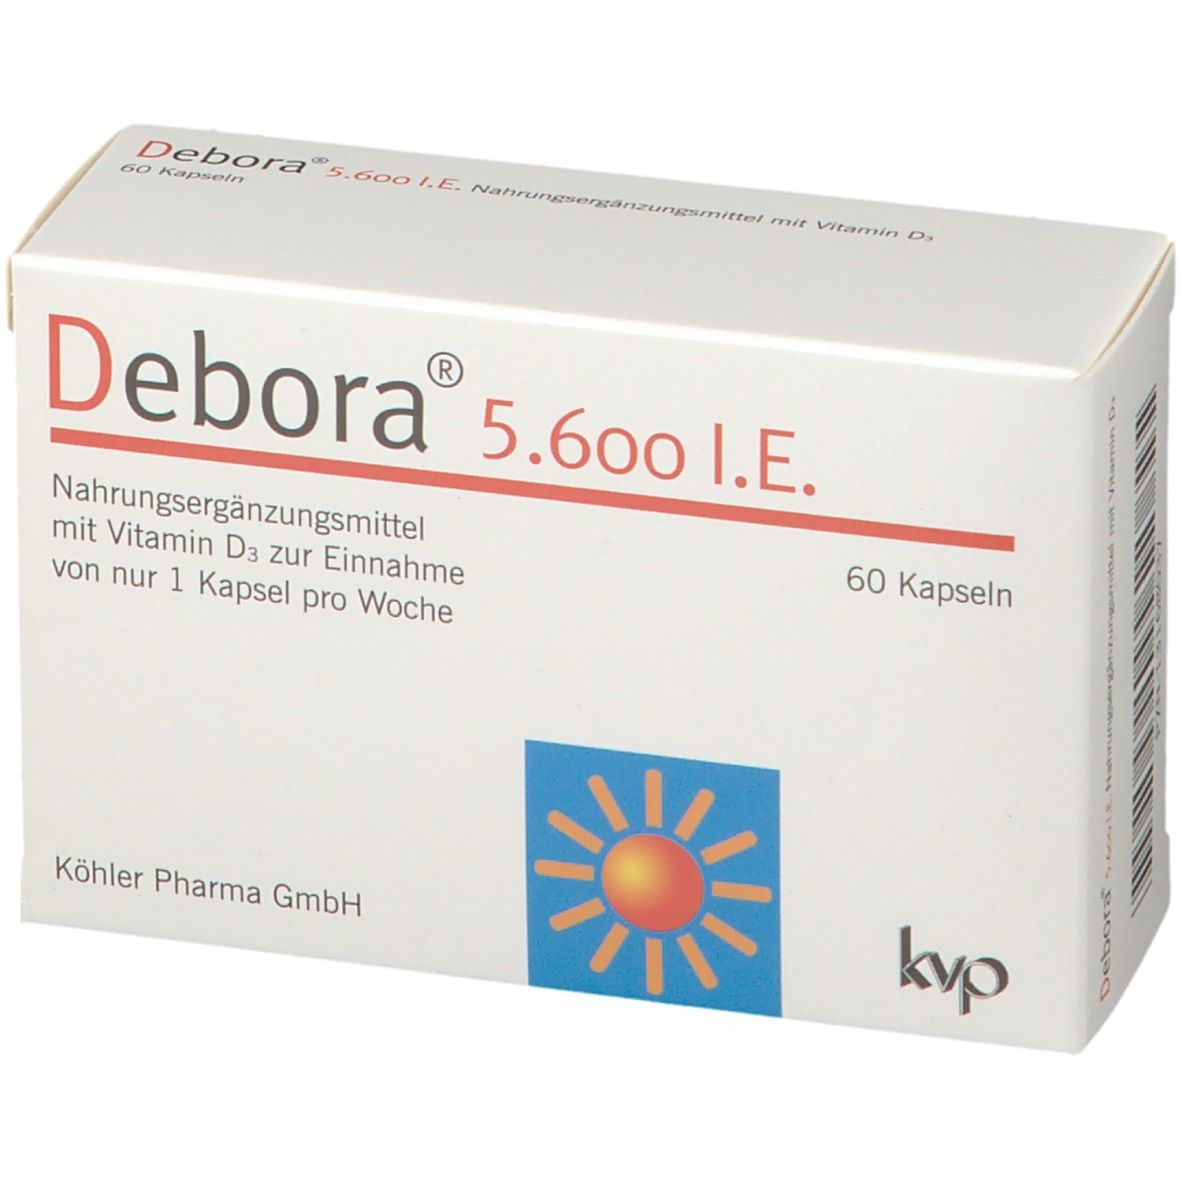 Debora® 5.600 I.E.